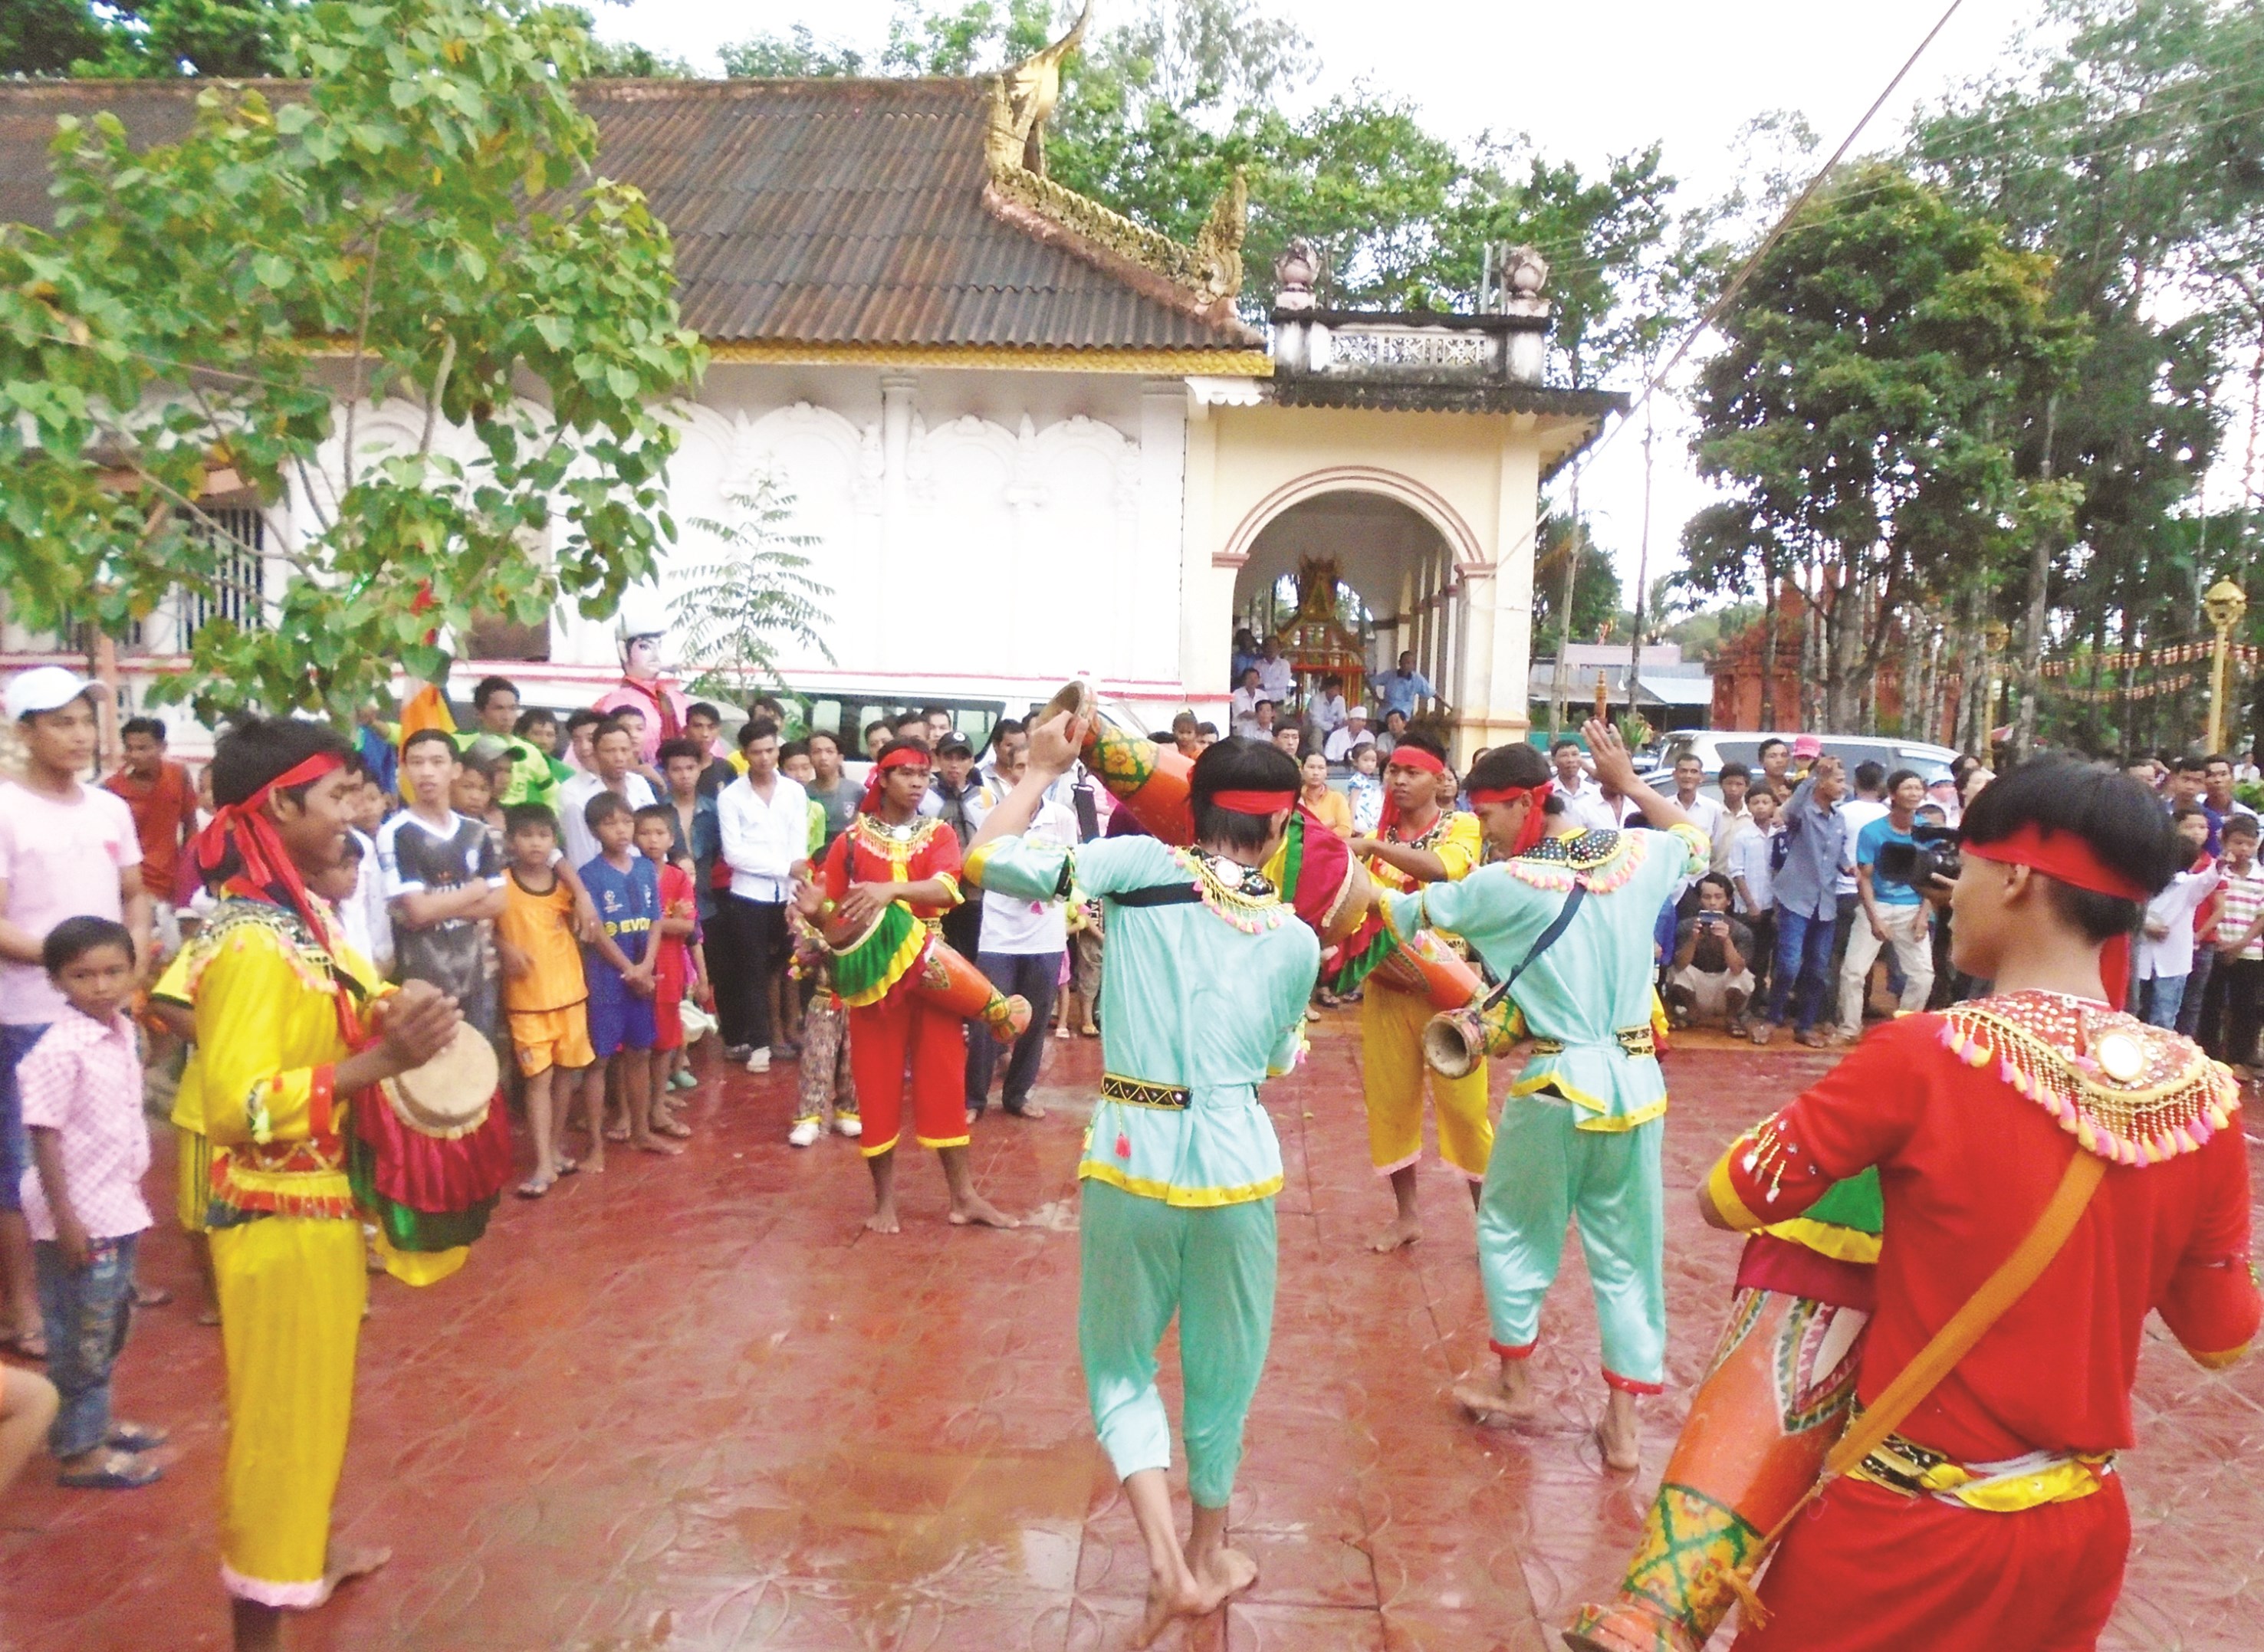 Điệu múa trống Sadăm rộn ràng vui nhộn của Đội múa chùa Bốn Mặt xã Phú Tân, huyện Châu Thành (Sóc Trăng)